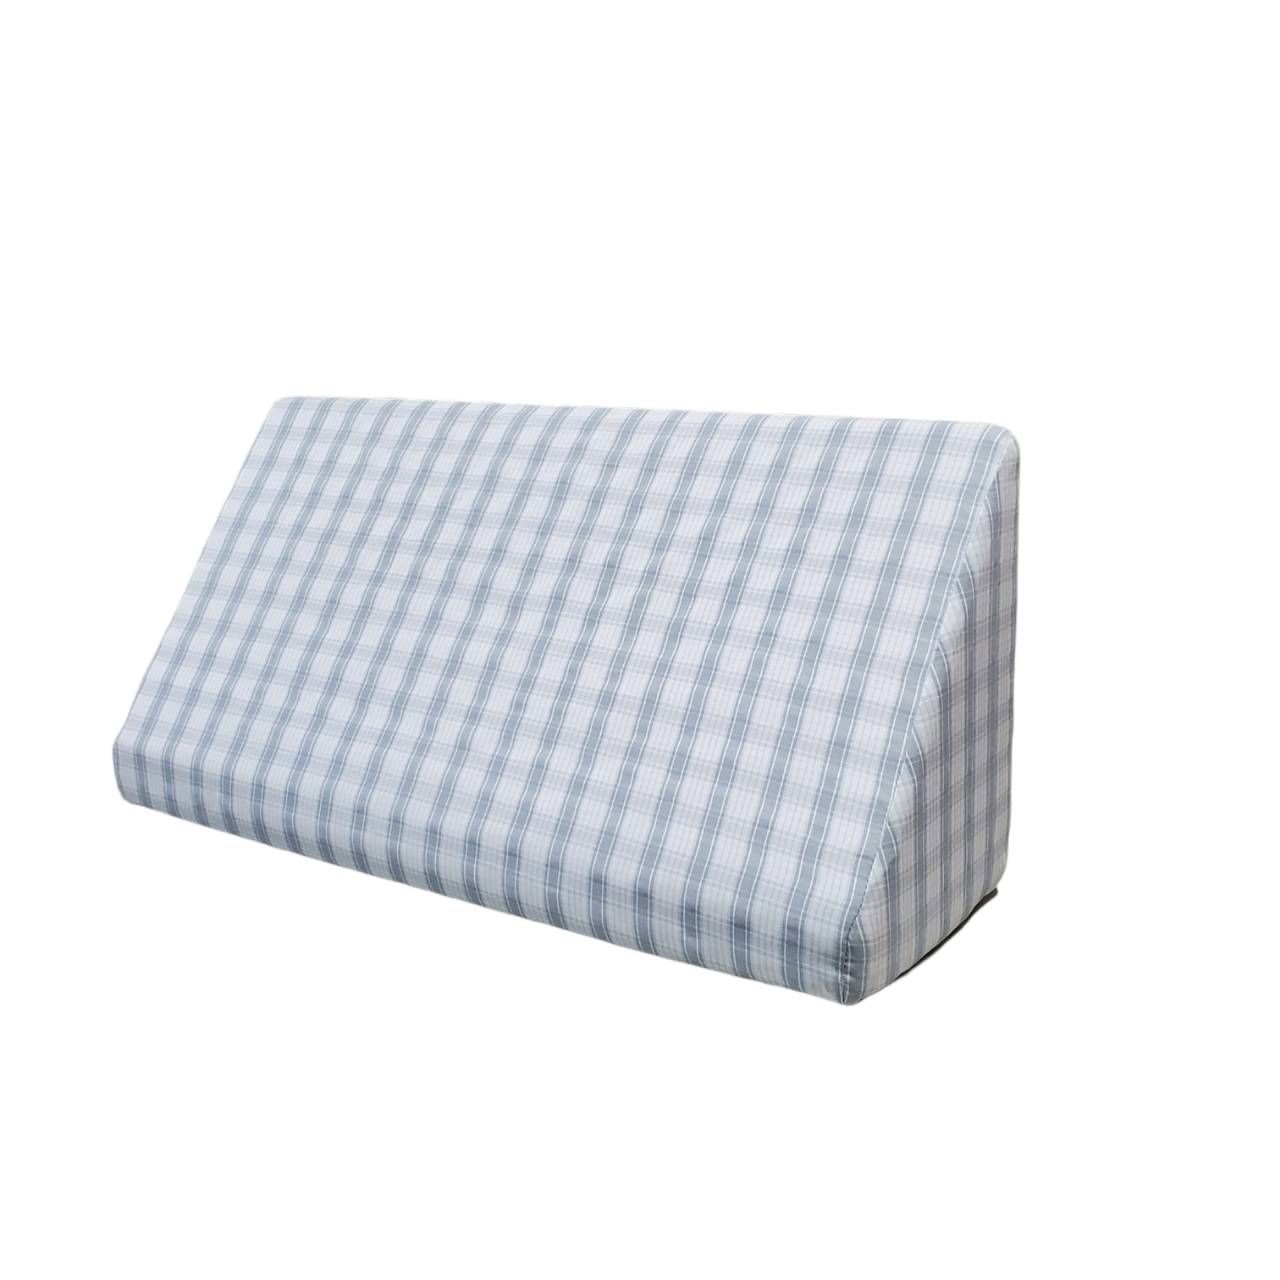 絕對支撐枕（抗菌枕套）-大50x25x15 / 小30x25x15公分